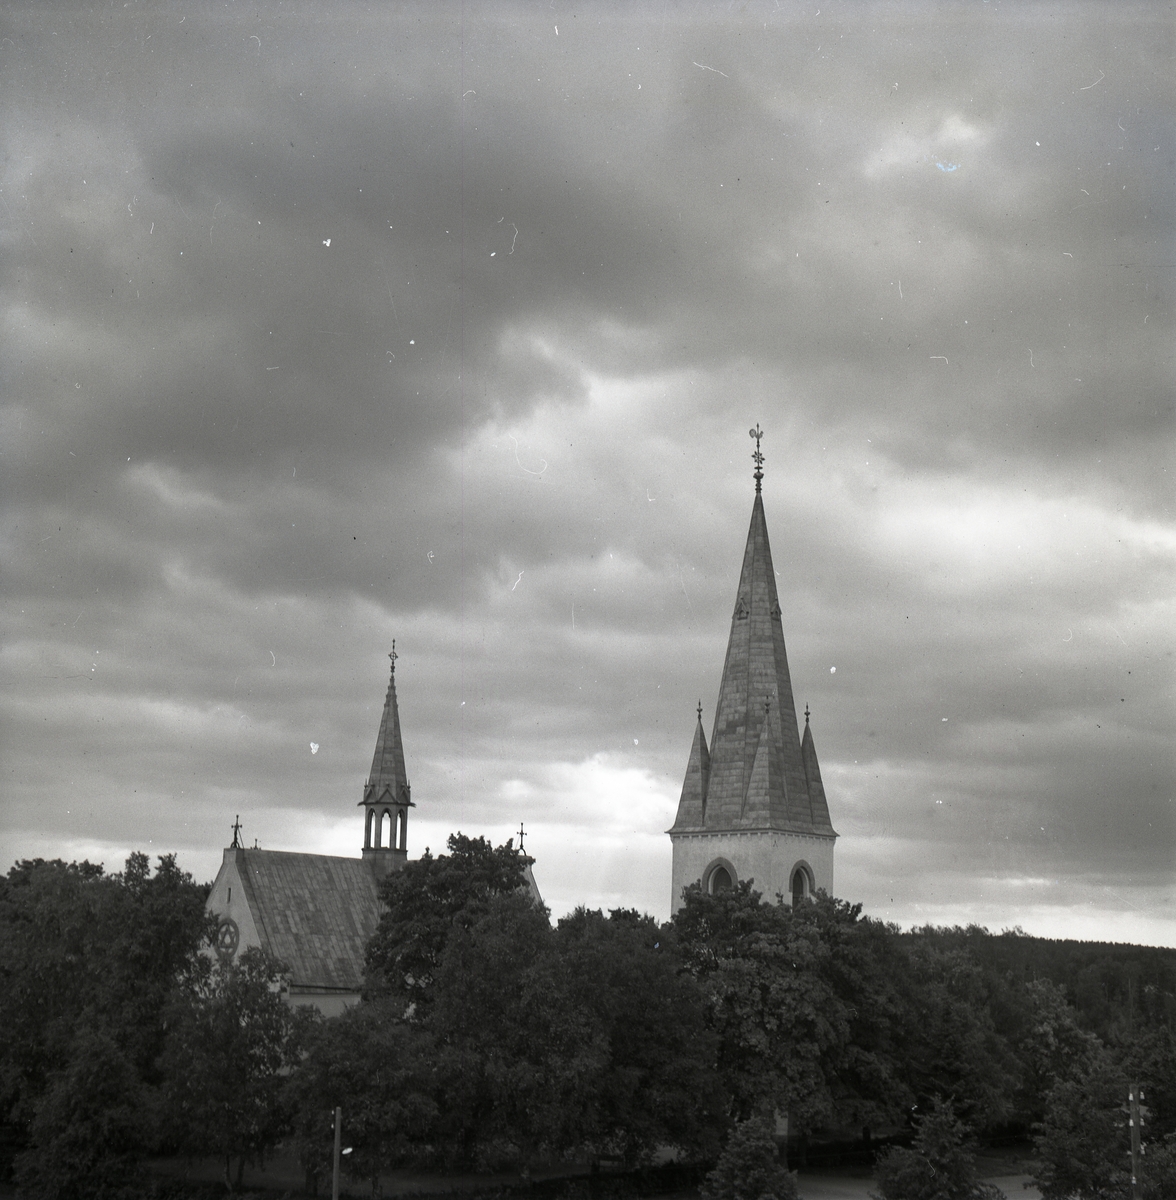 Bland trädtopparna sticker kyrktornet och takryttaren från Harmångers kyrka upp.